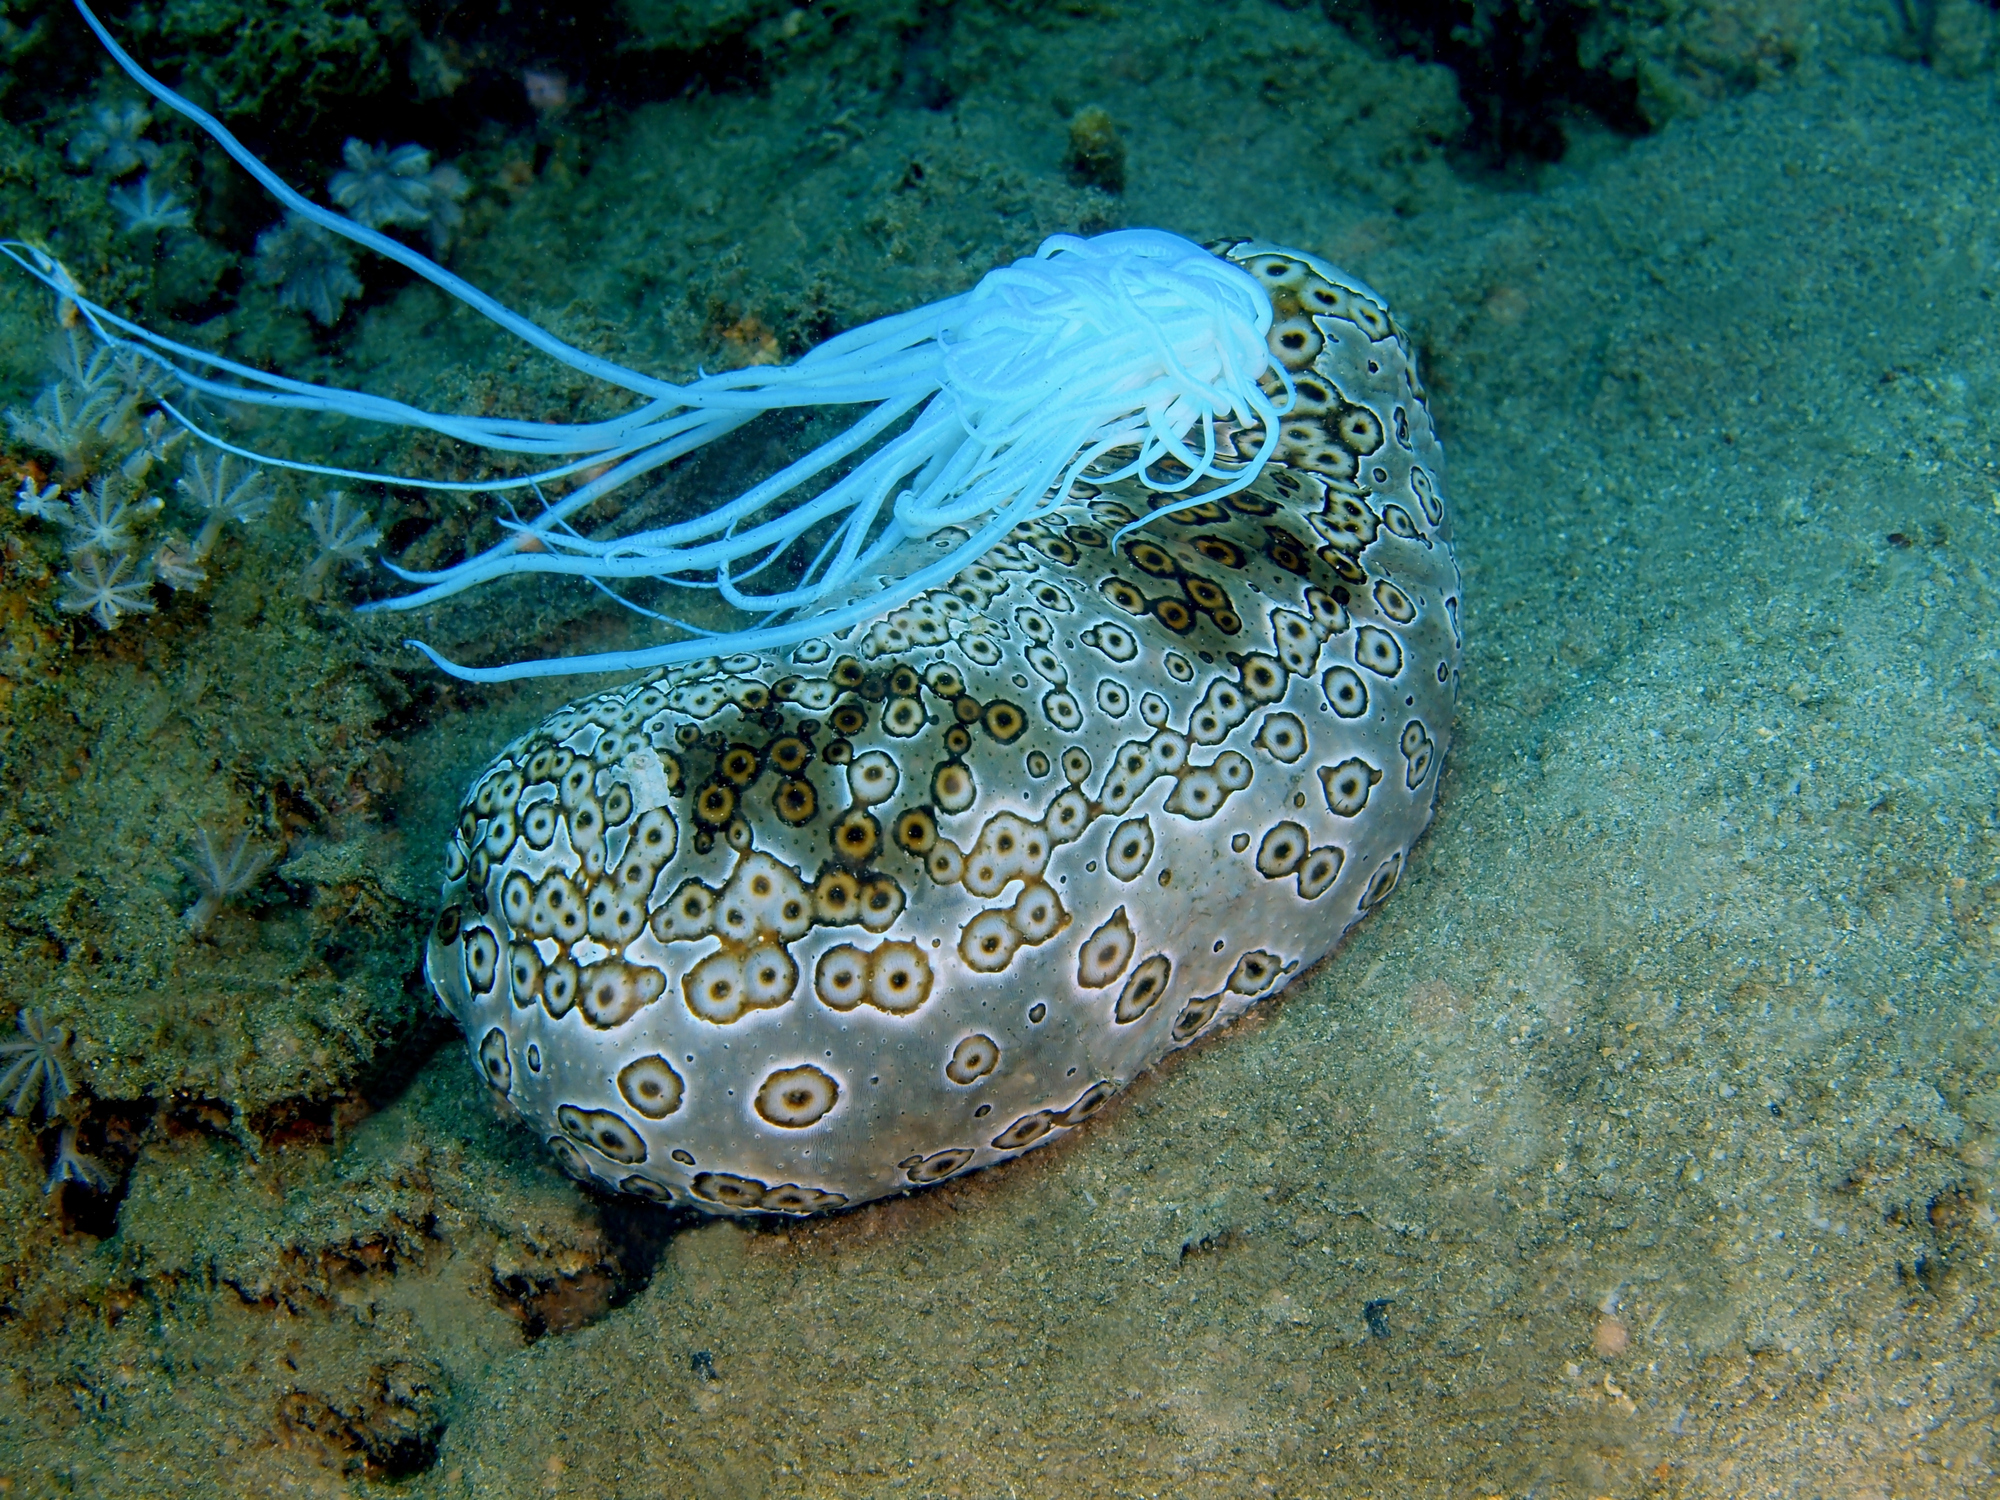 Certaines espèces de concombres de mer peuvent expulser leurs intestins collants et toxiques pour se défendre.